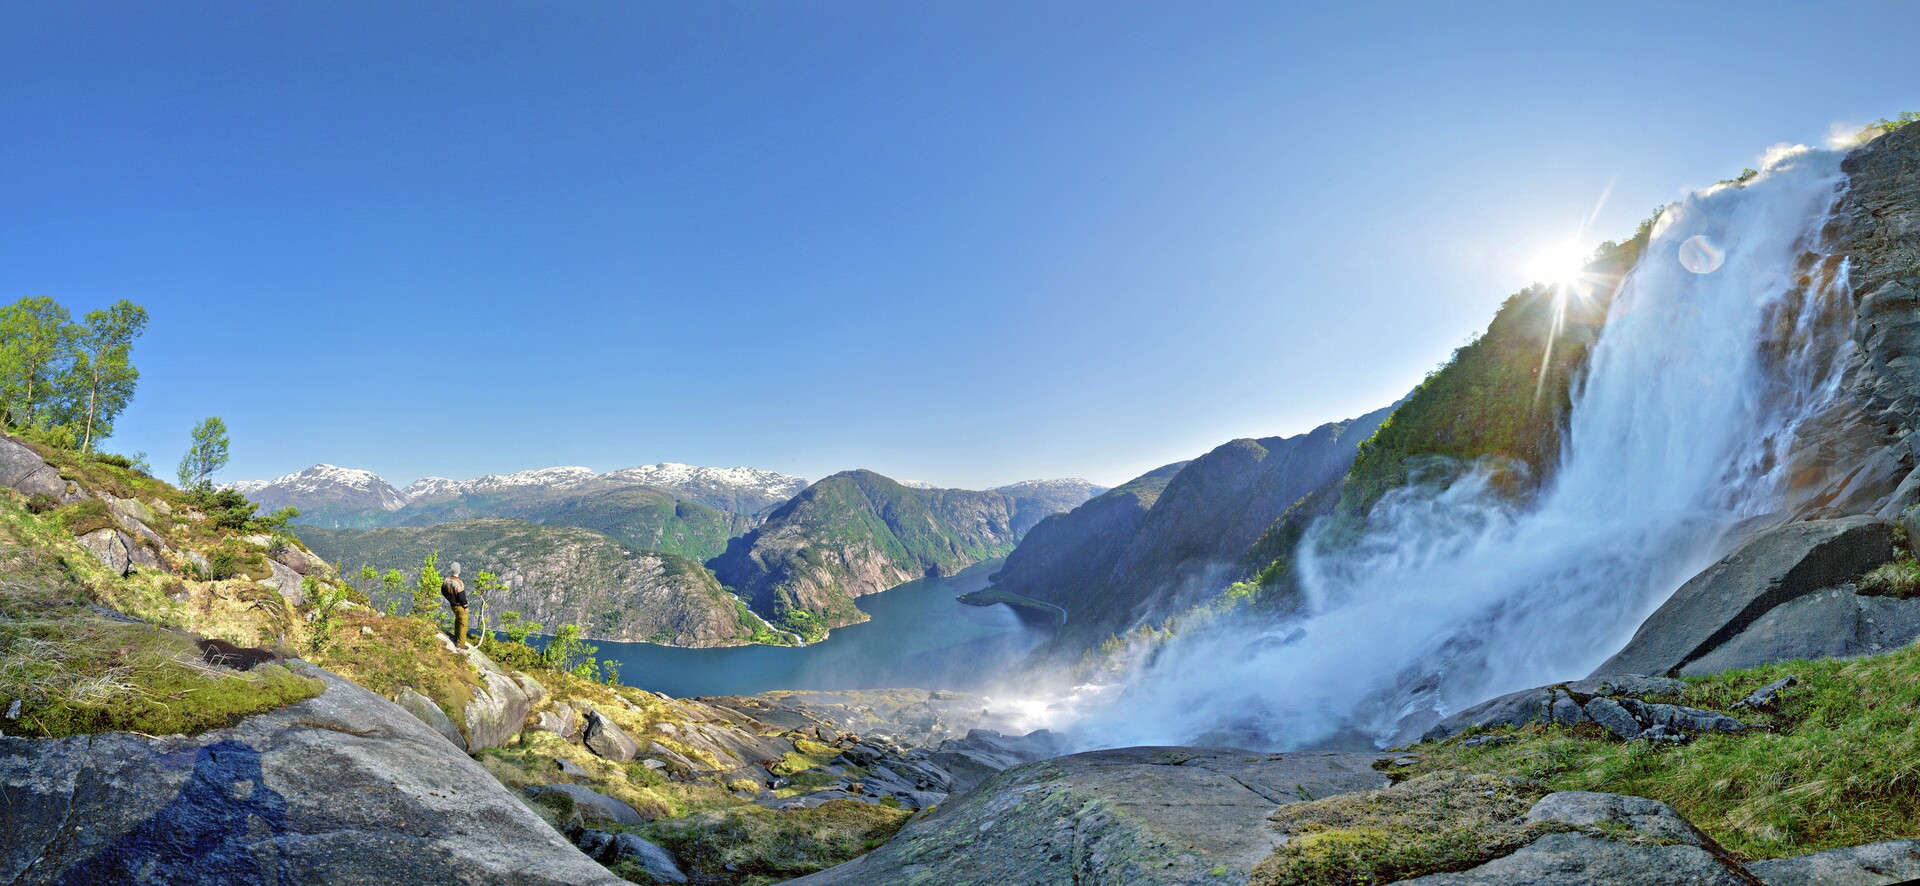 Beleef de magie van de Noorse watervallen deze lente